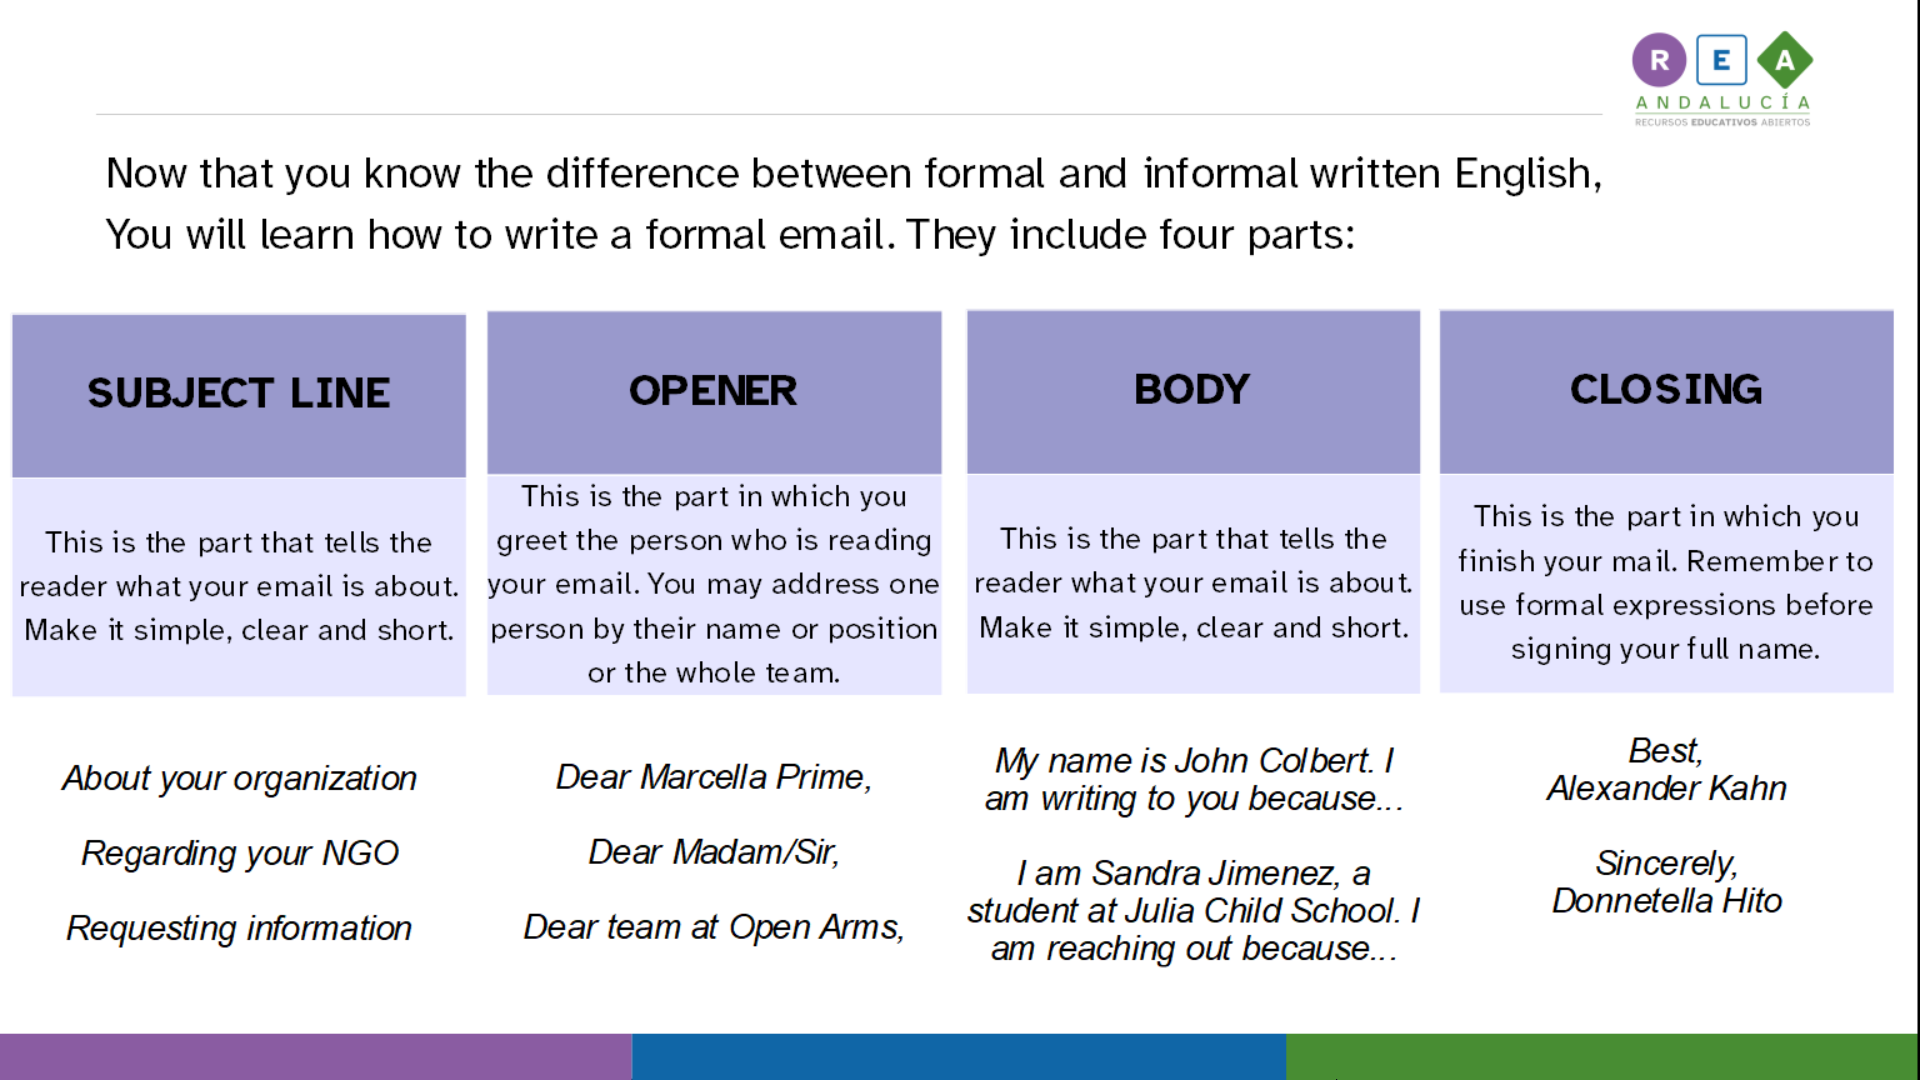 La imagen muestra texto en inglés para aprender a escribir un correo formal.